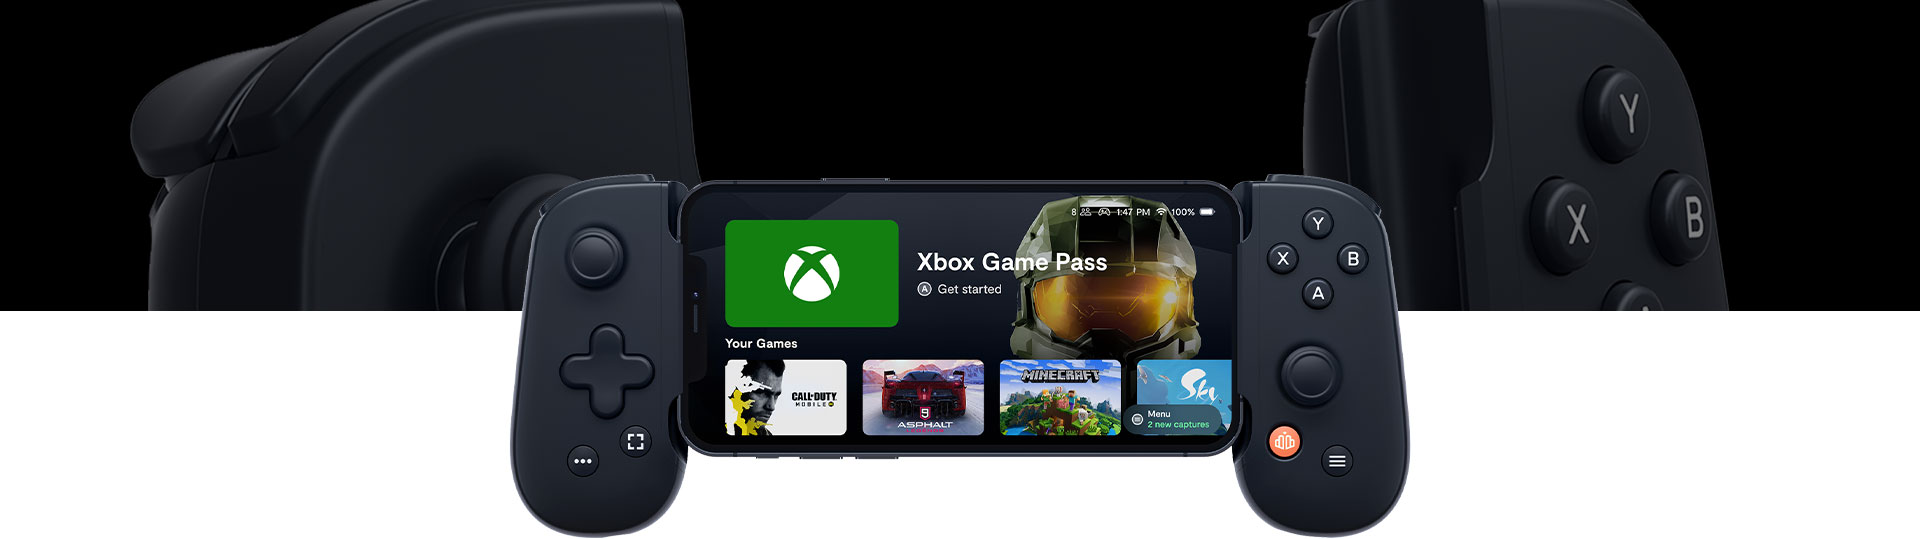 Backbone One-Startbildschirm mit Xbox Game Pass, Call of Duty, Asphalt, Minecraft und Sky.